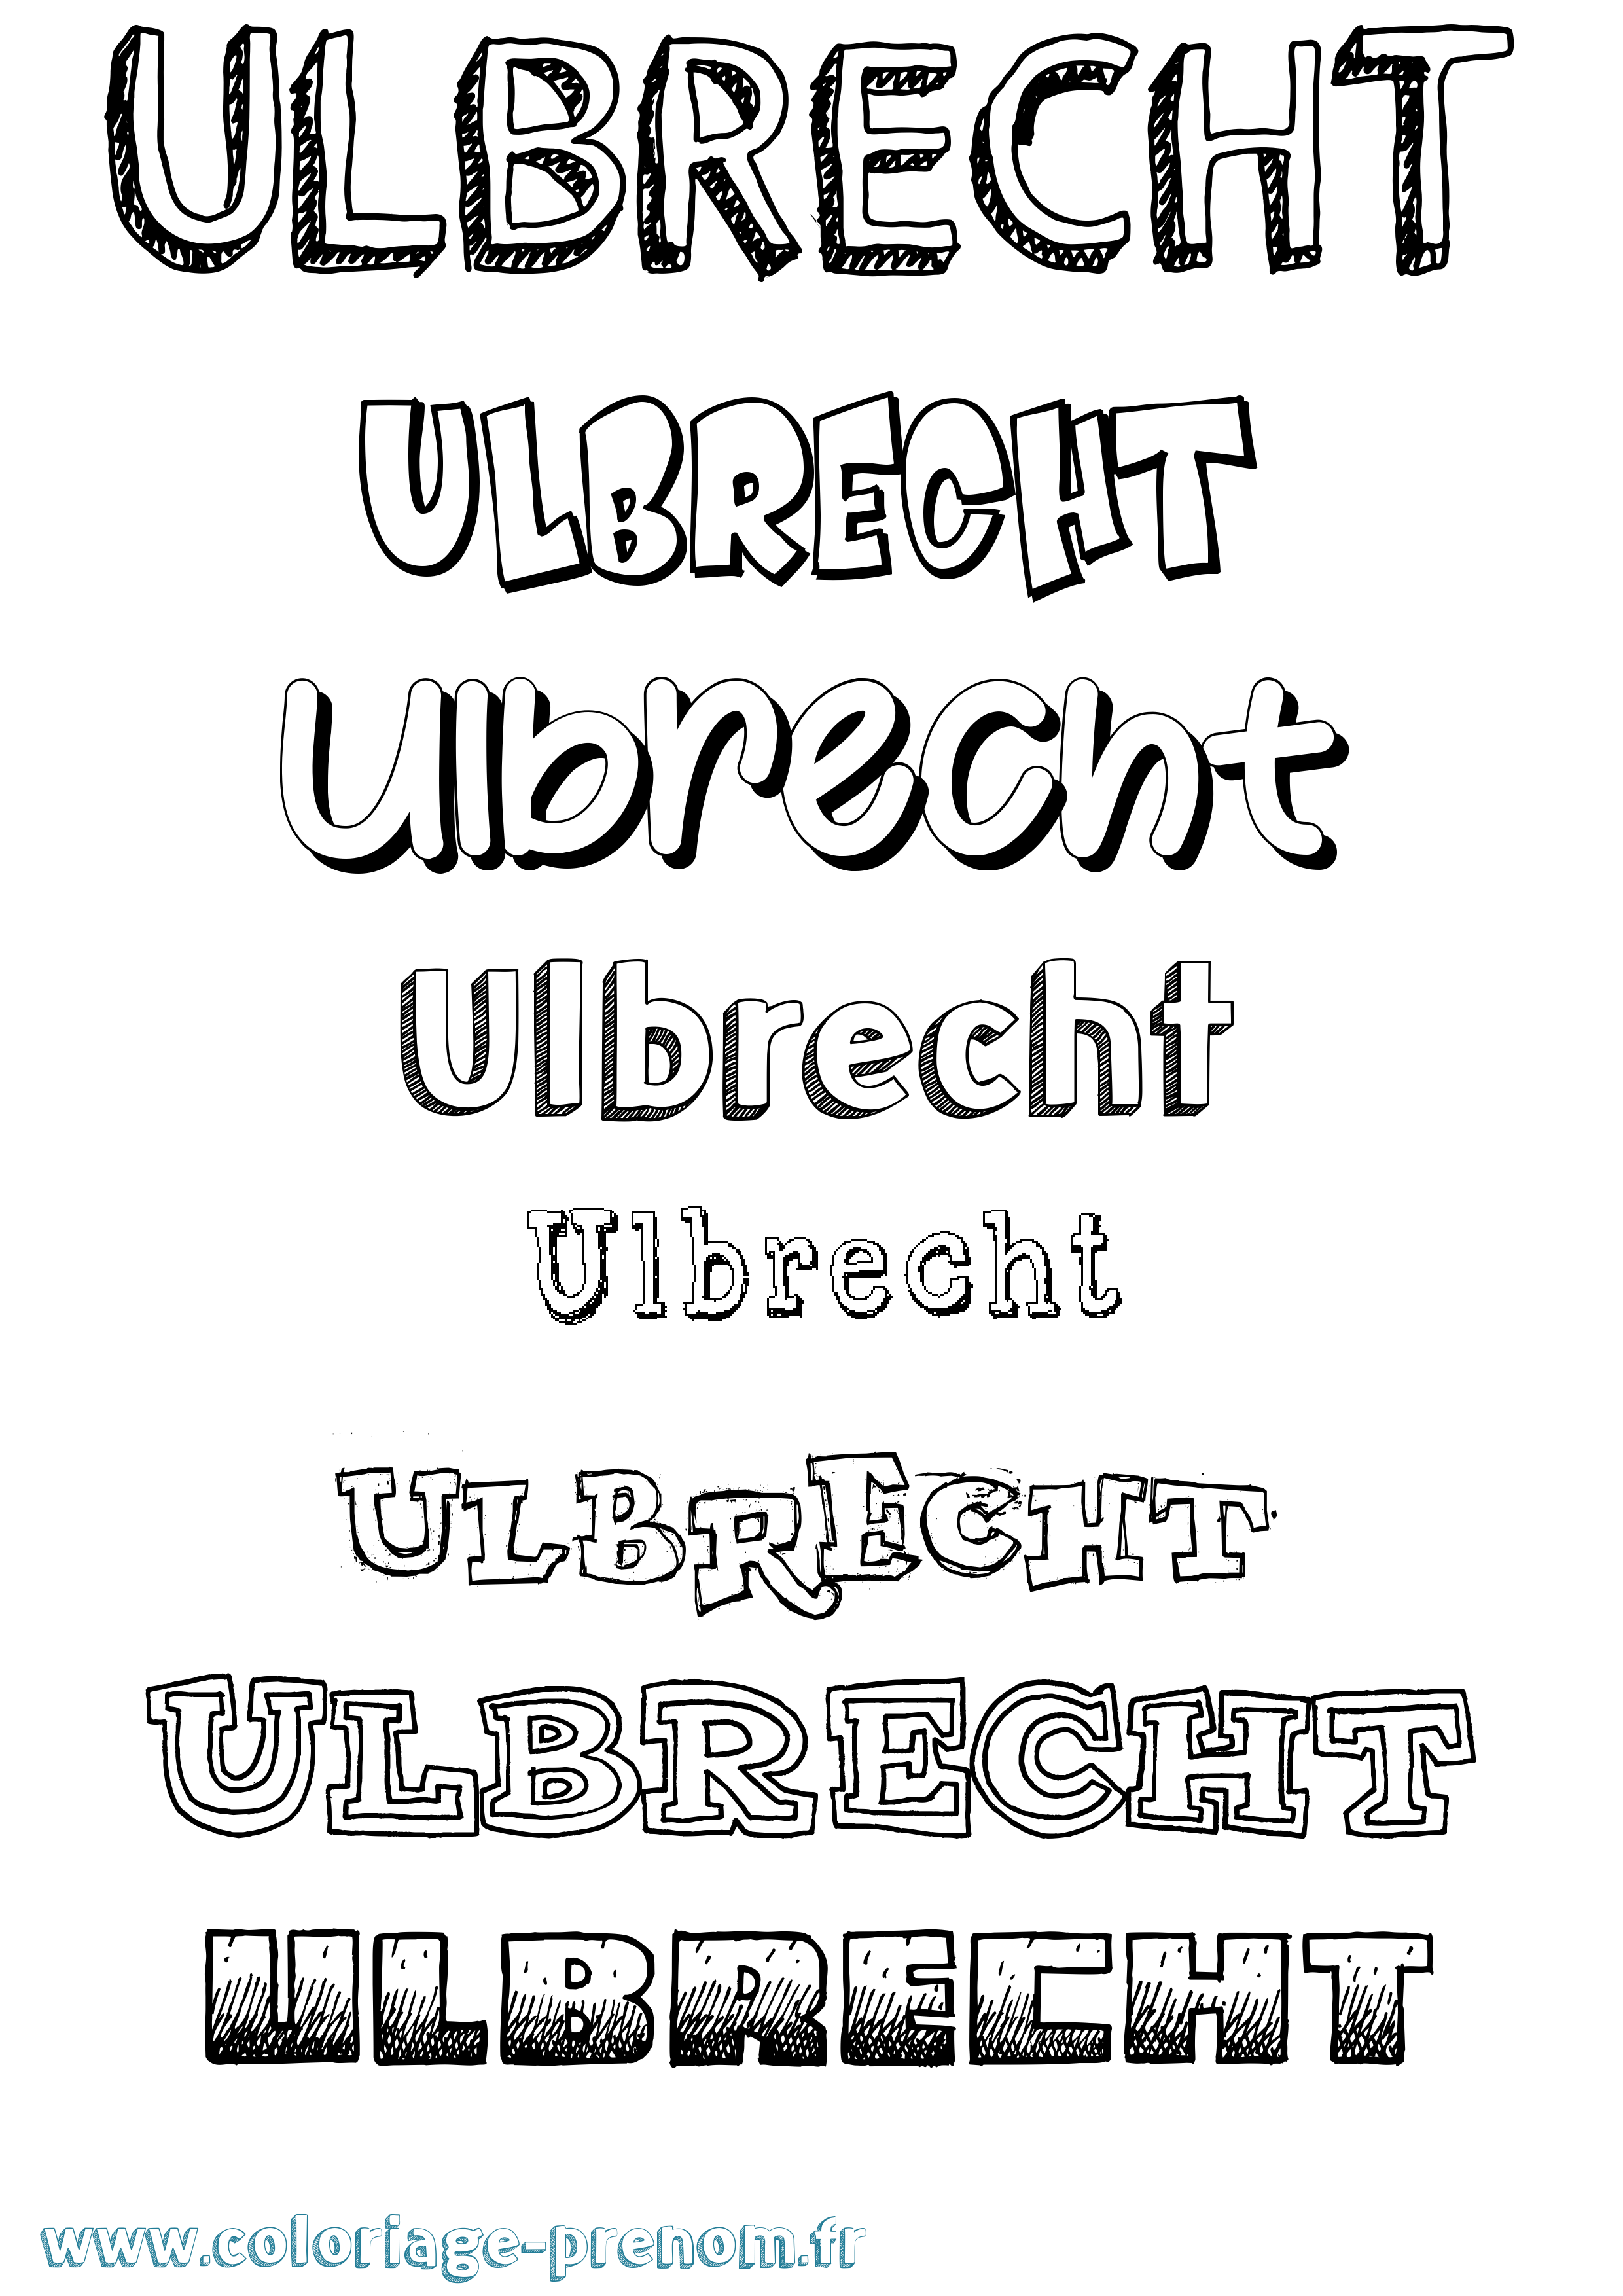 Coloriage prénom Ulbrecht Dessiné